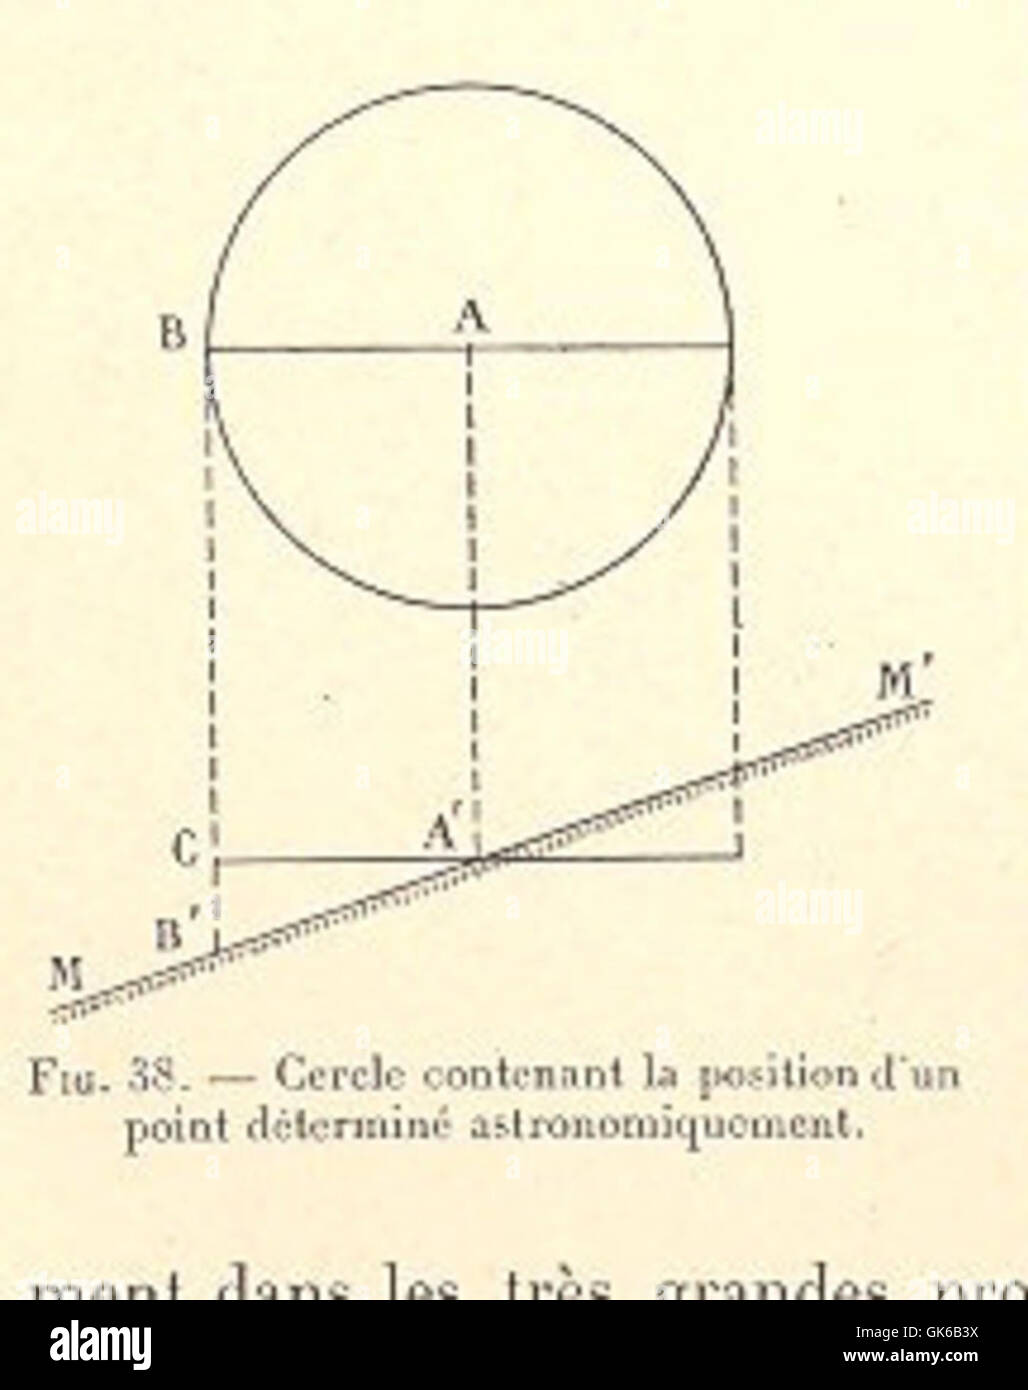 53142 Cercle contenant la position d'un point determine astronomiquement Stock Photo